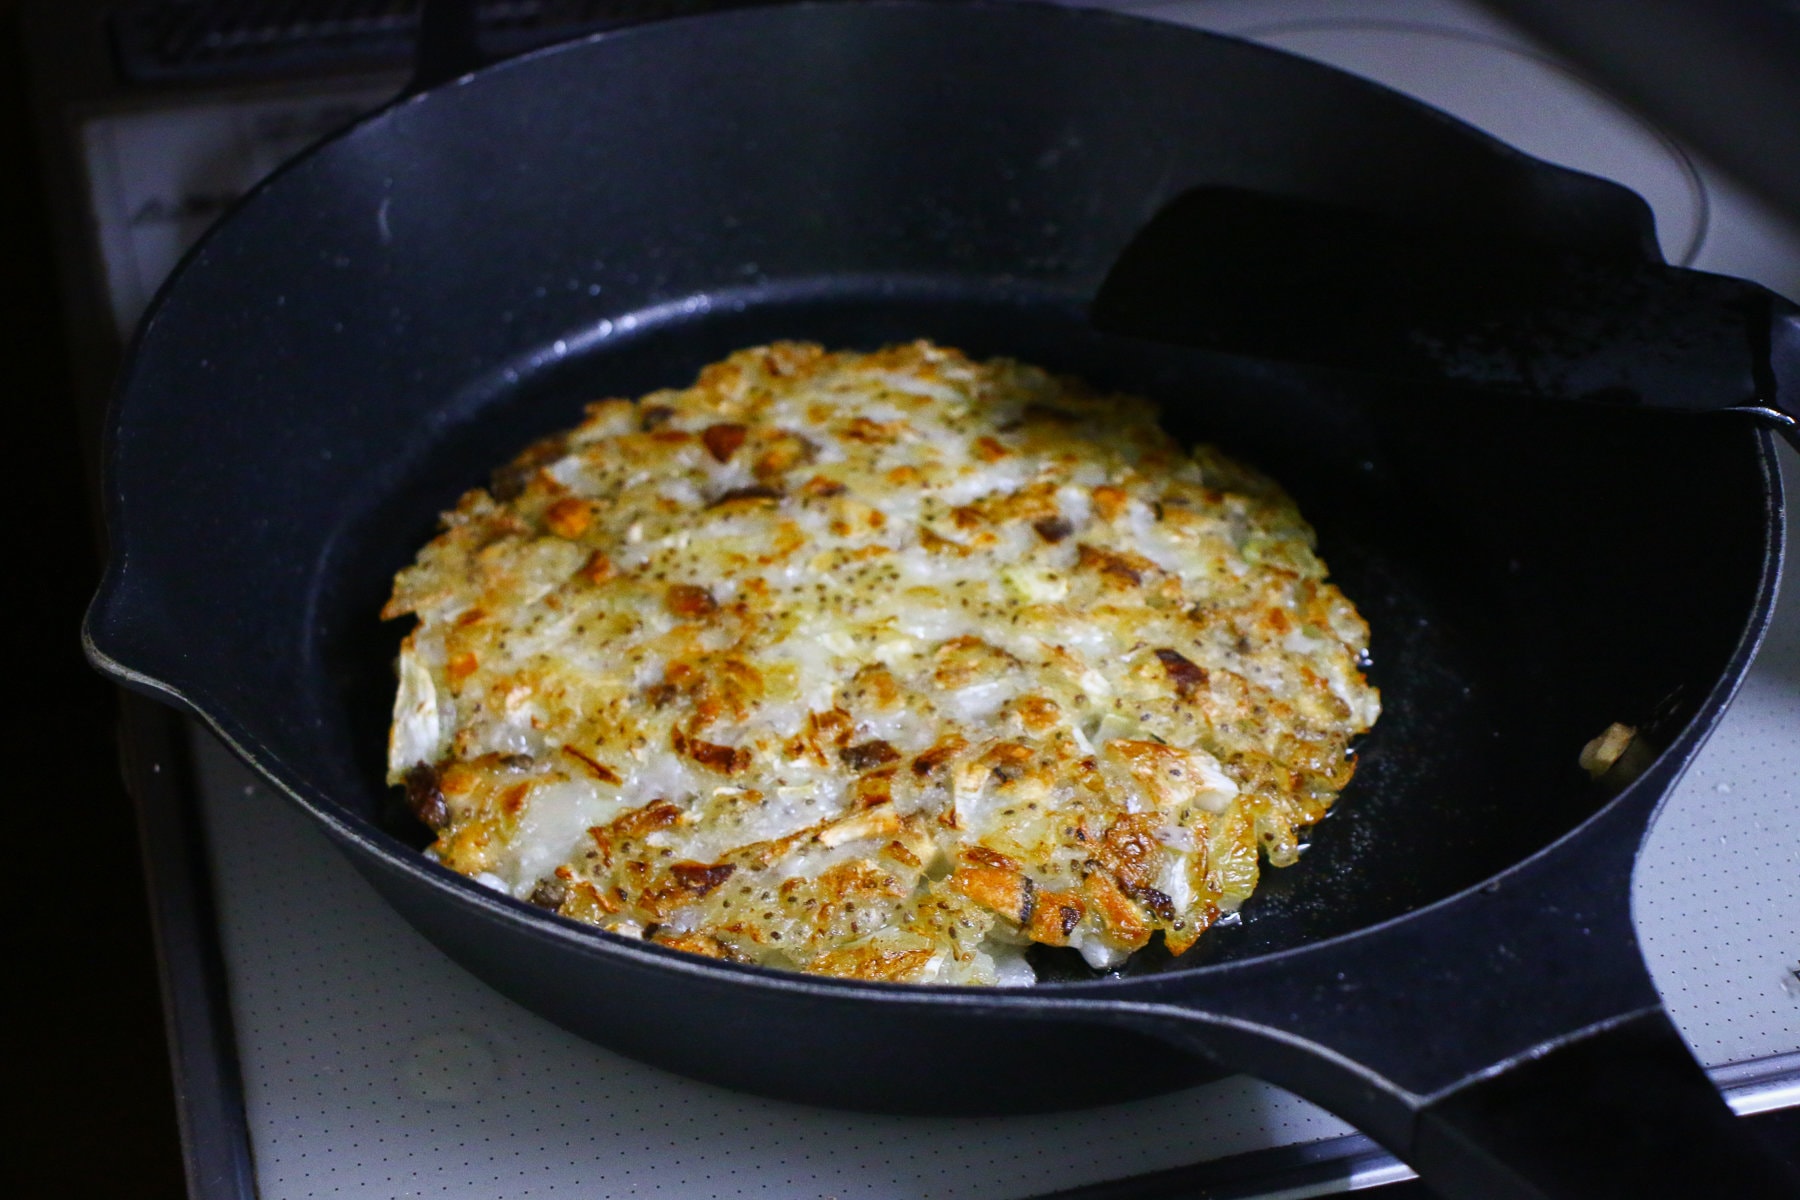 Flip the vegan okonomiyaki